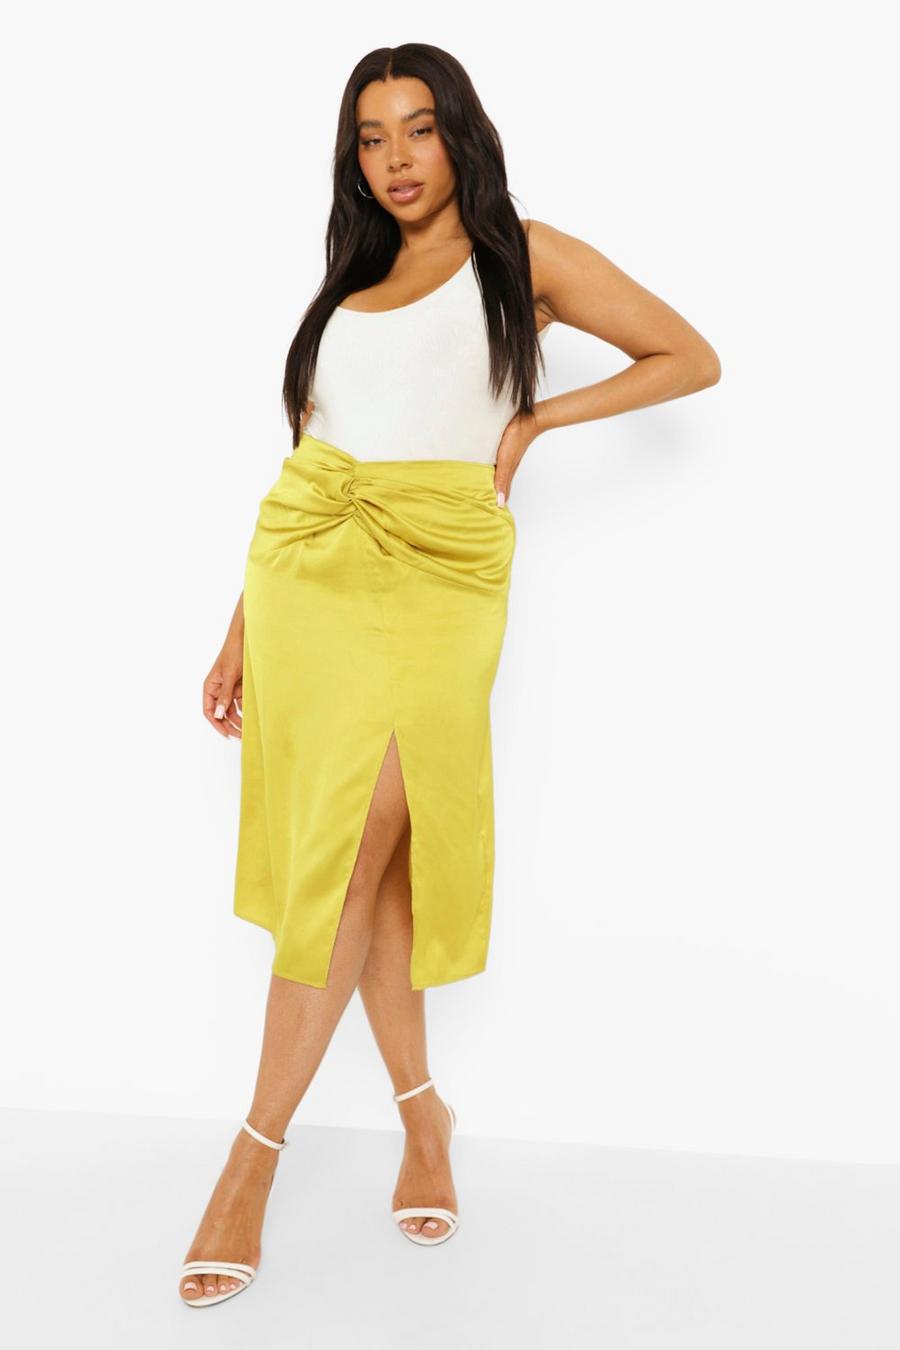 ירקרק giallo חצאית מידי סאטן עם קשר פיתול בחזית למידות גדולות